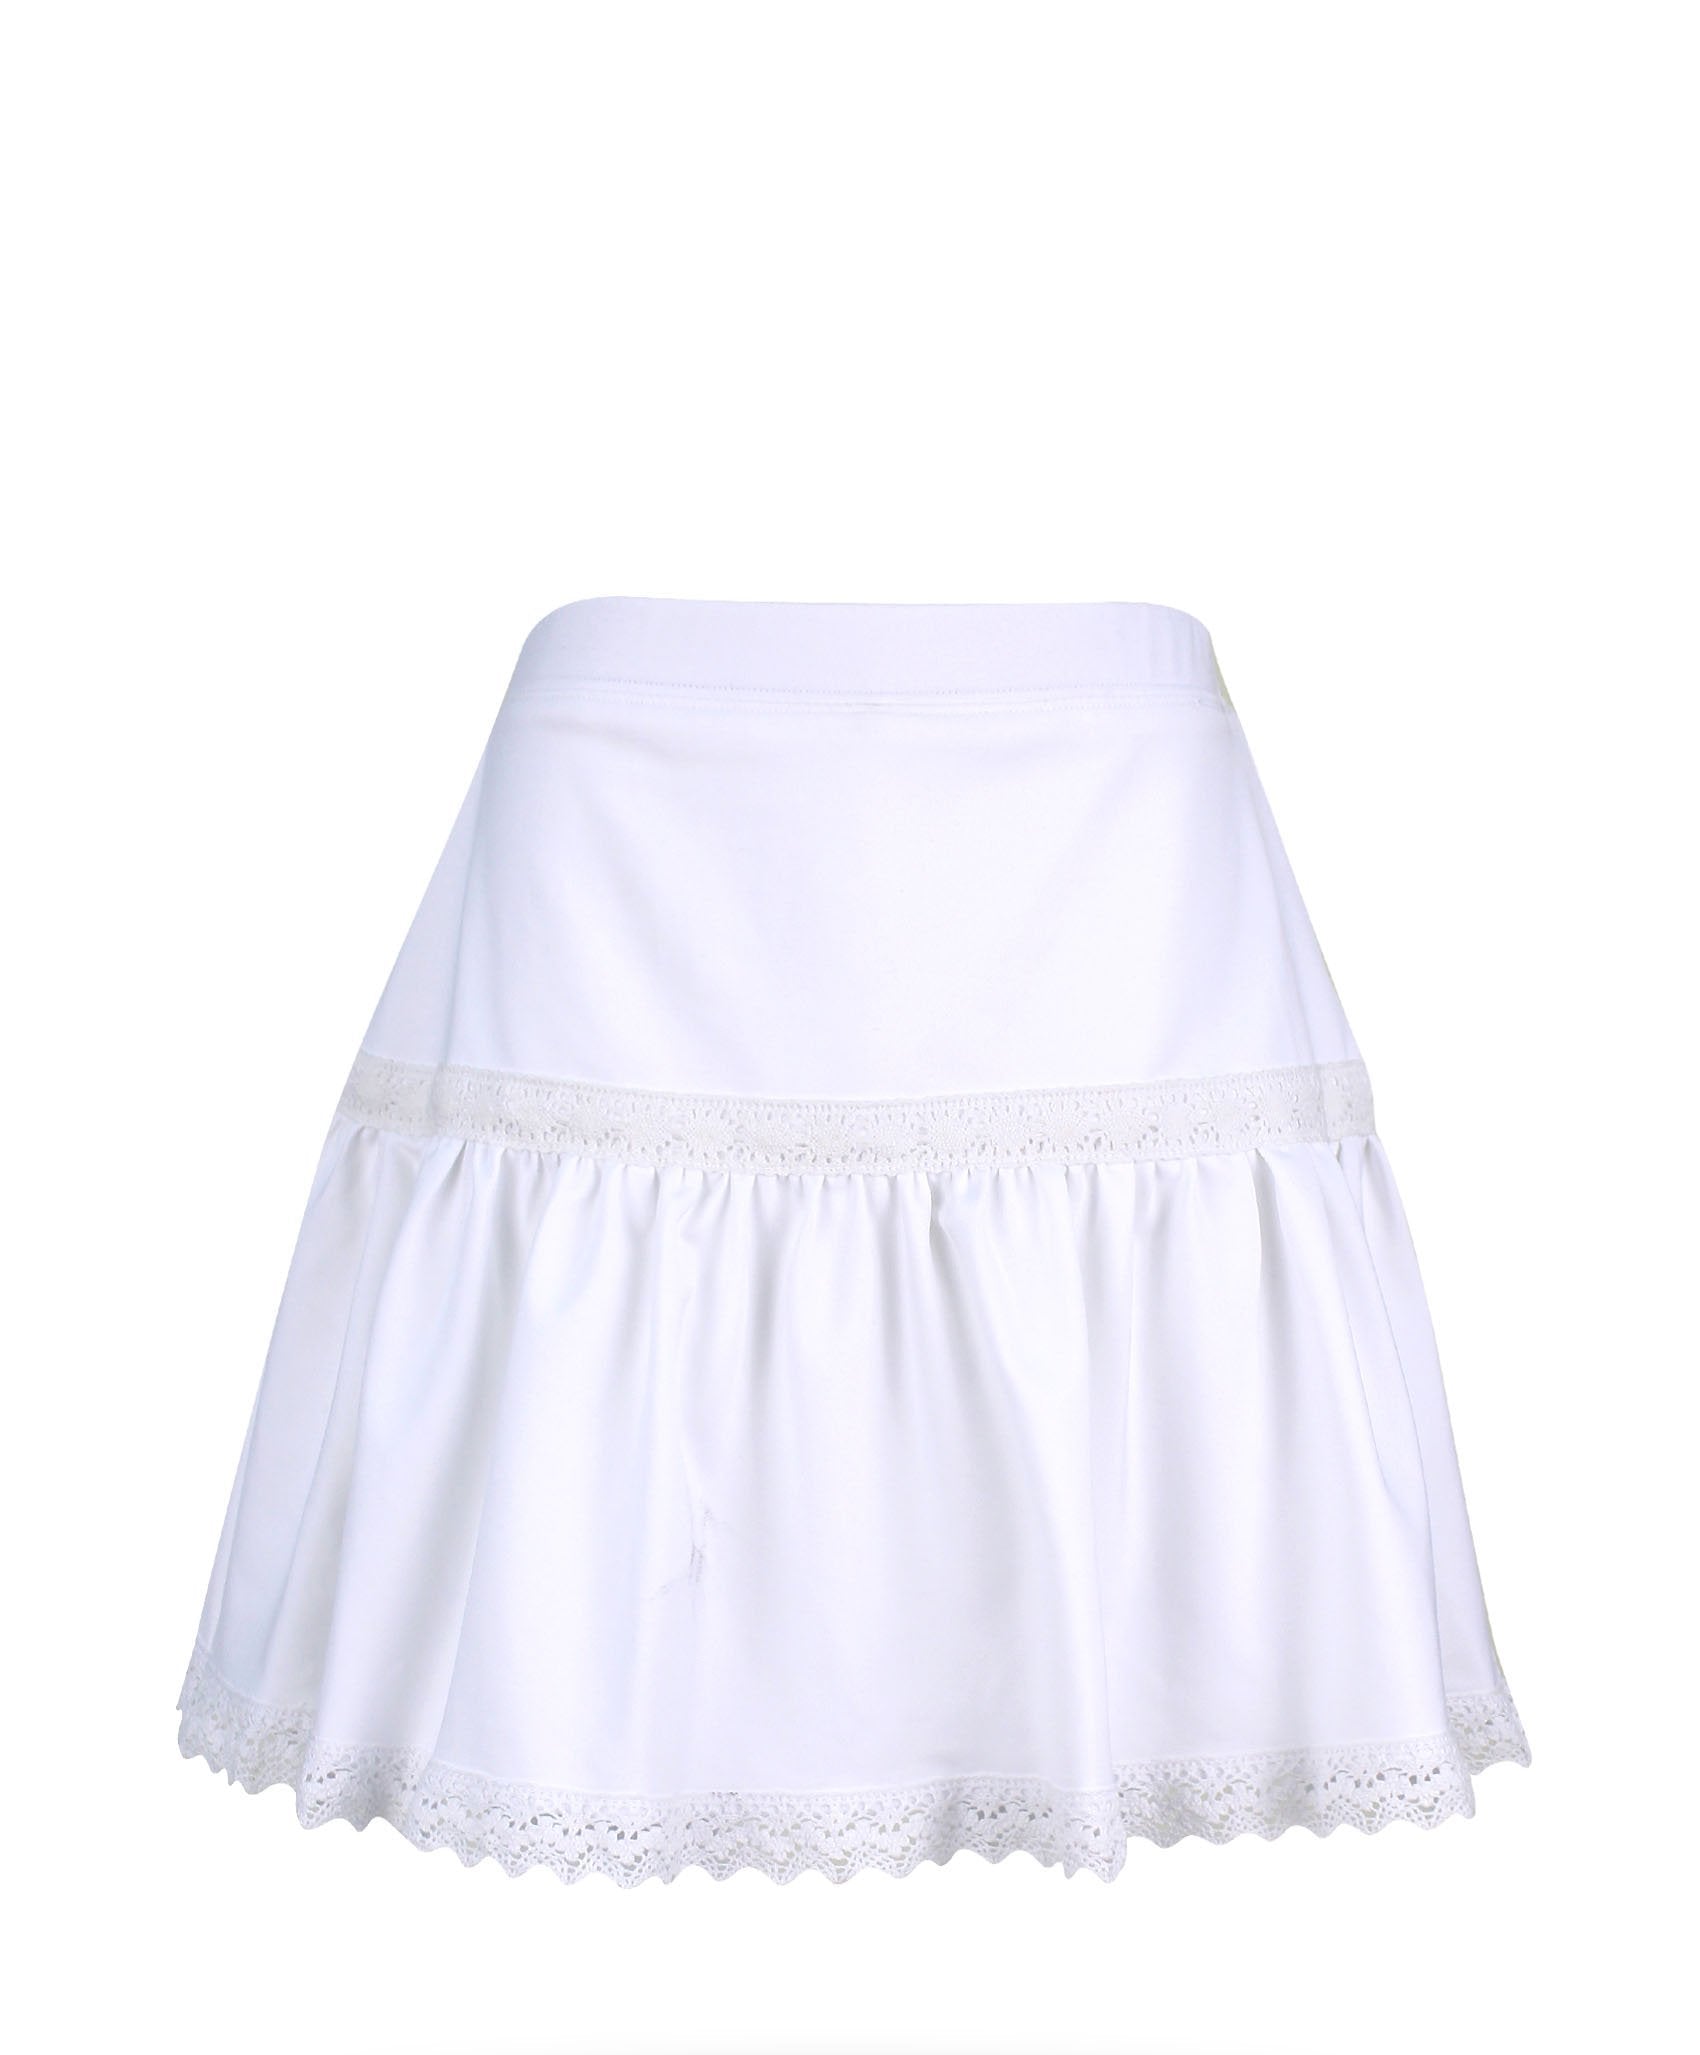 Hampton Court Chic Skirt - Little Miss Tennis